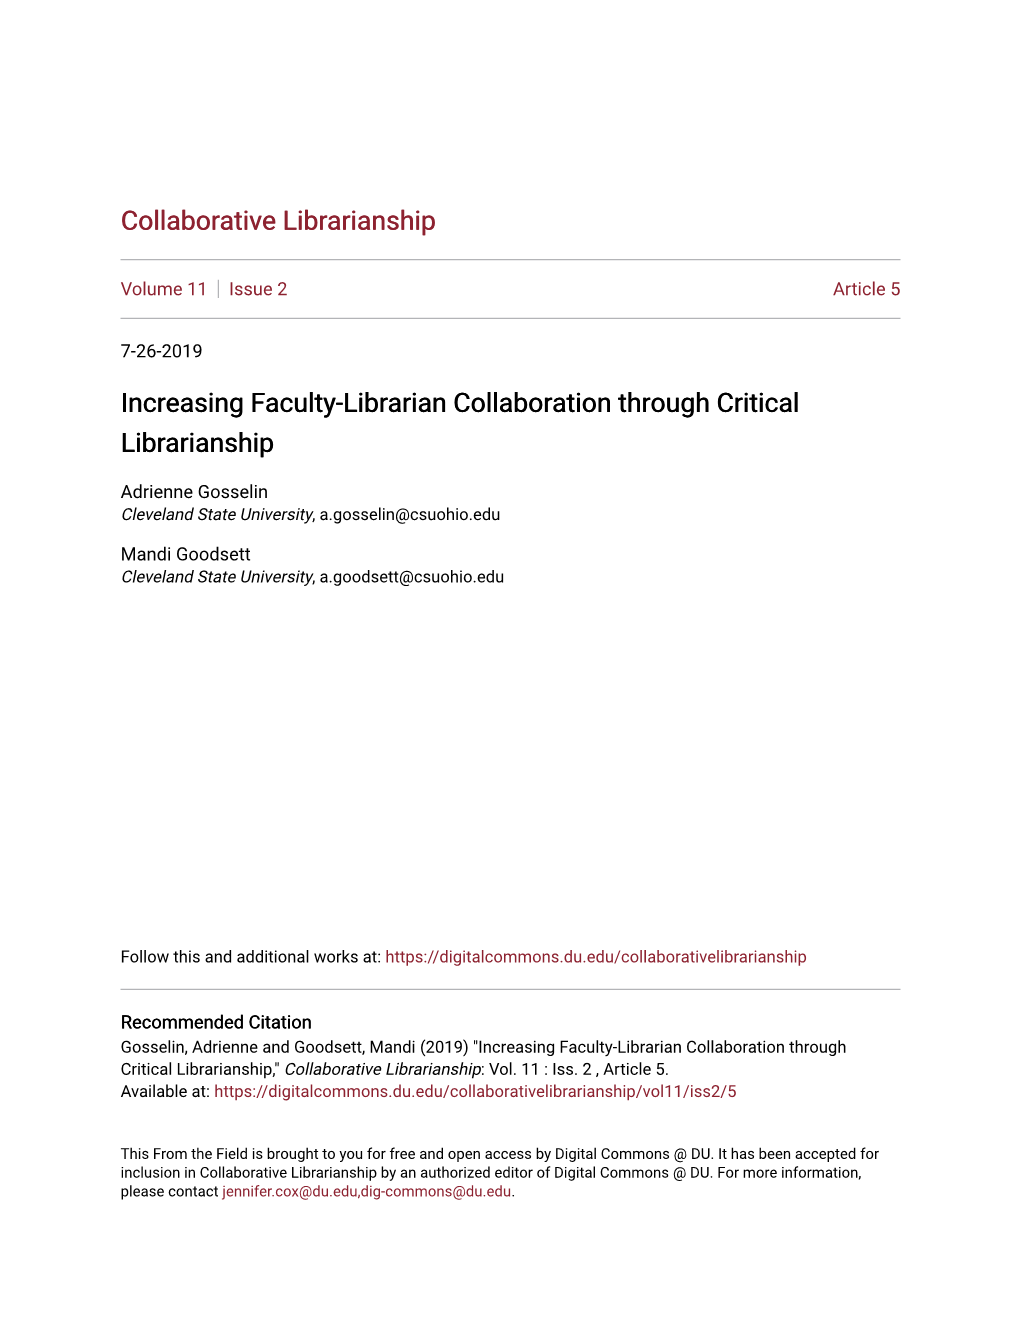 Increasing Faculty-Librarian Collaboration Through Critical Librarianship